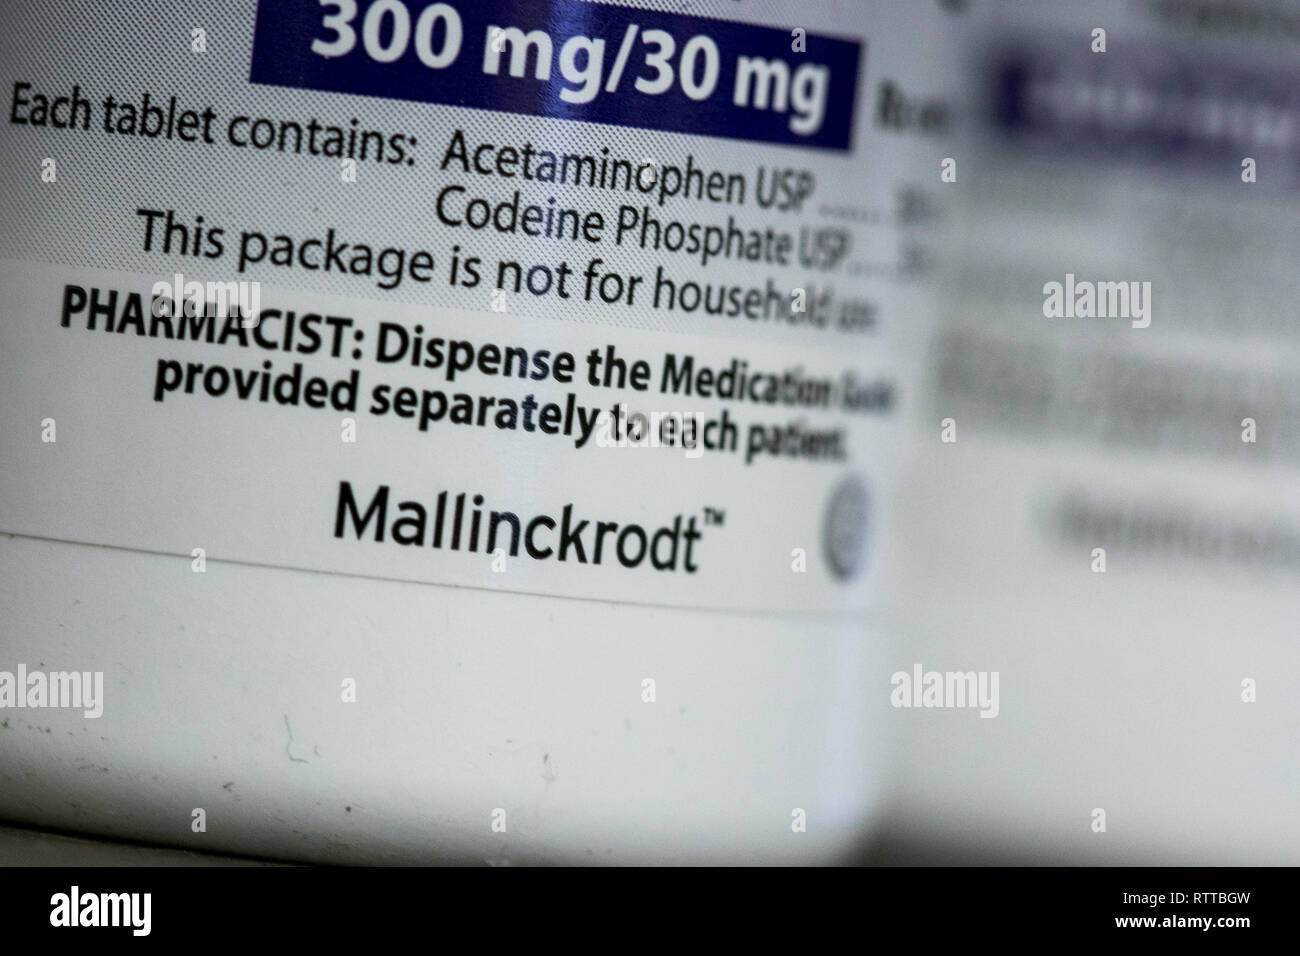 Mallinckrodt Pharmaceuticals est un logo sur l'emballage de produits pharmaceutiques sur ordonnance photographié dans une pharmacie. Banque D'Images